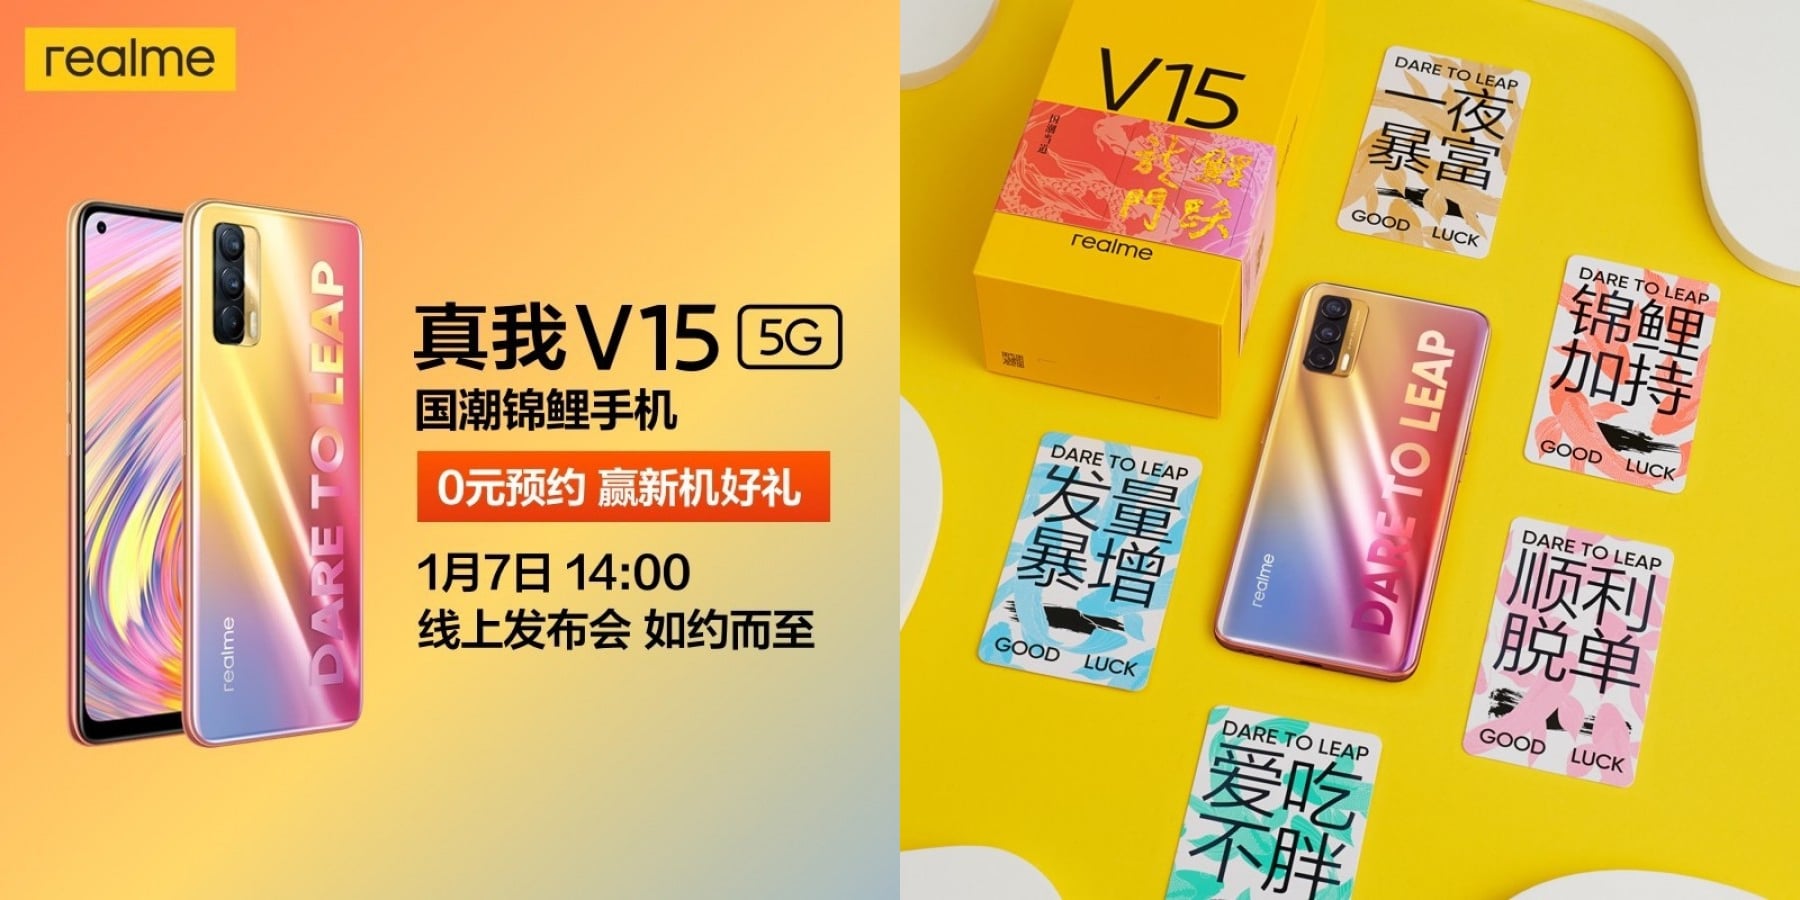 Imagem anunciando o lançamento do Realme V15 e mostrando cartões que o acompanham